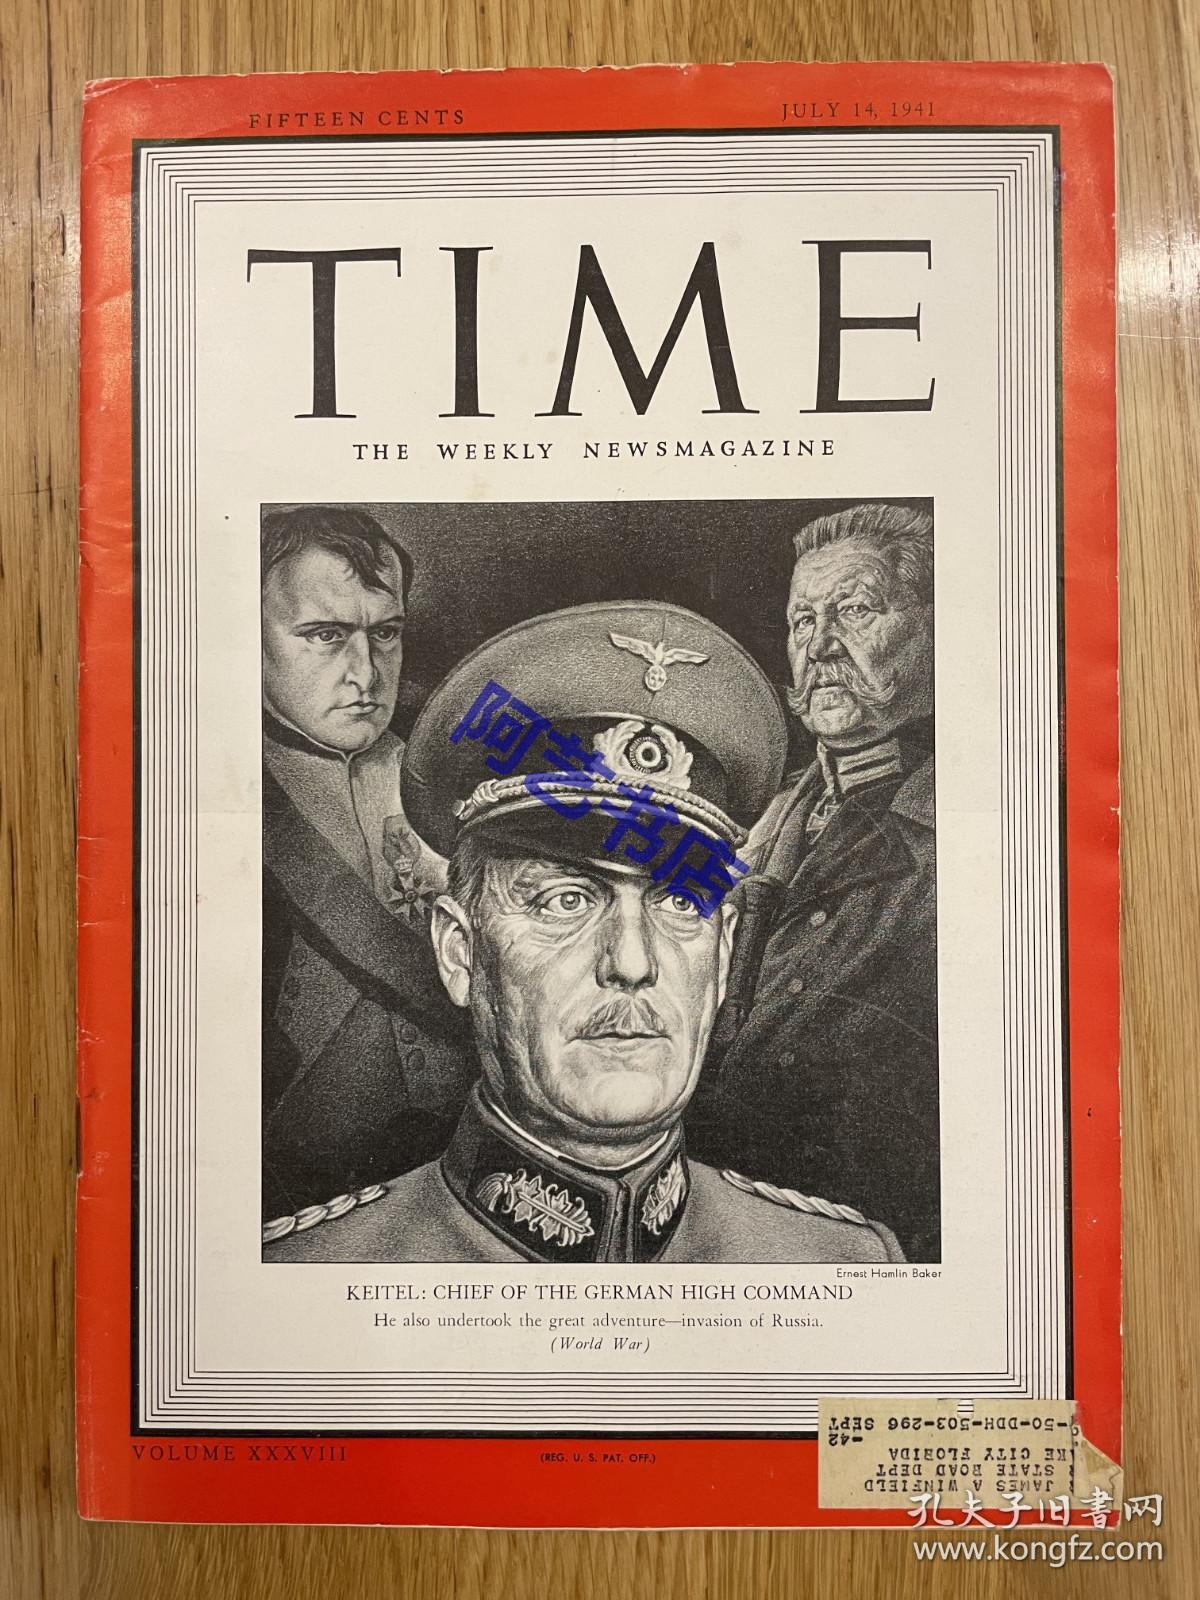 【现货】时代周刊杂志 TIME MAGAZINE，1941年7月14日，封面 “ 威廉·凯特尔”，德军最高统帅部总长，陆军元帅，他是第二次世界大战期间德军资历最老的指挥官之一。珍贵的历史资料。